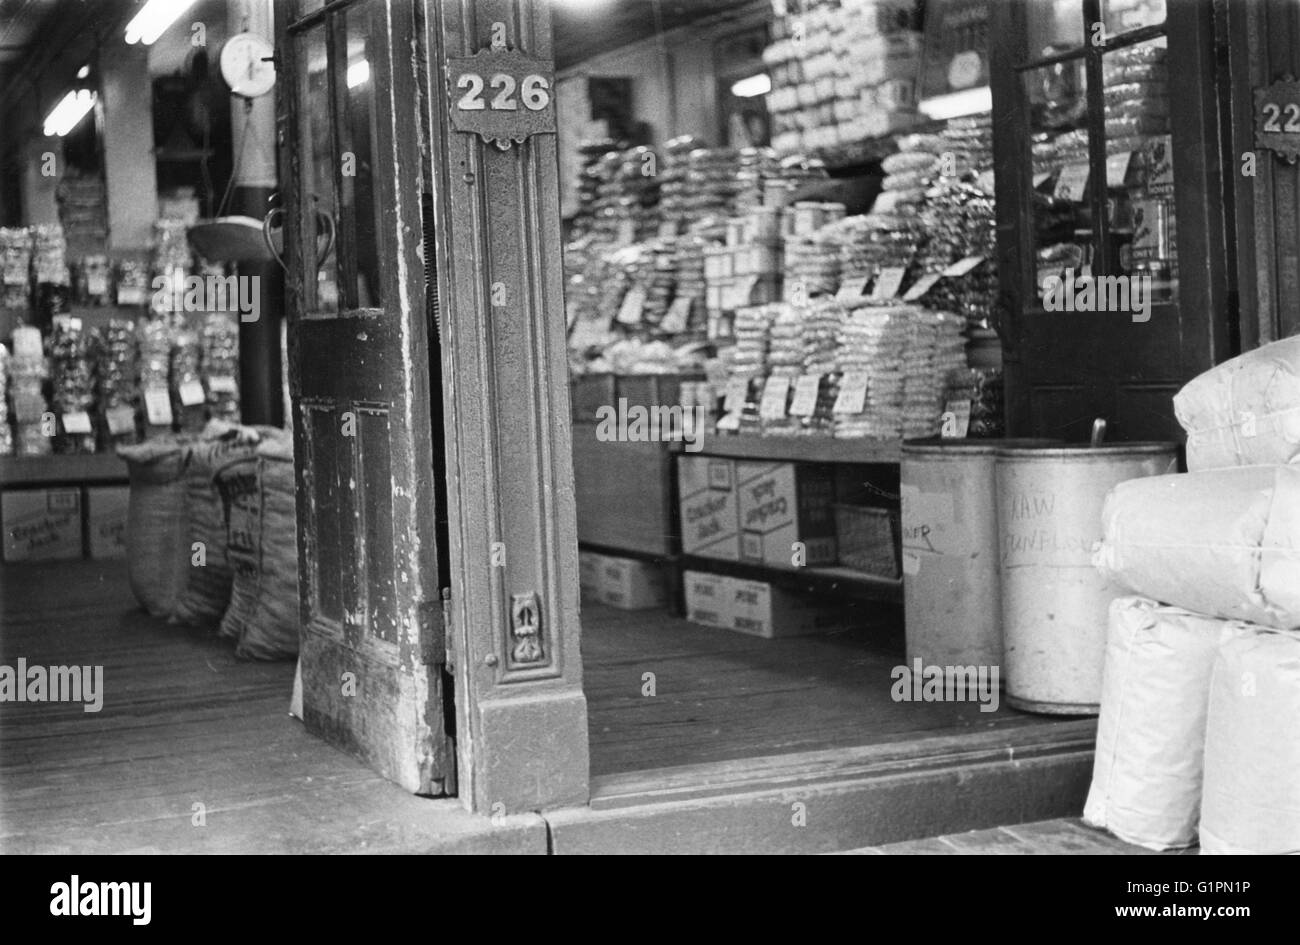 Mercado de Washington, c1960. La puerta de entrada de una tienda en el mercado de Washington en Manhattan. Fotografiado en los tempranos 1960s, poco antes de ser demolida para dar paso a la World Trade Center. Foto de stock